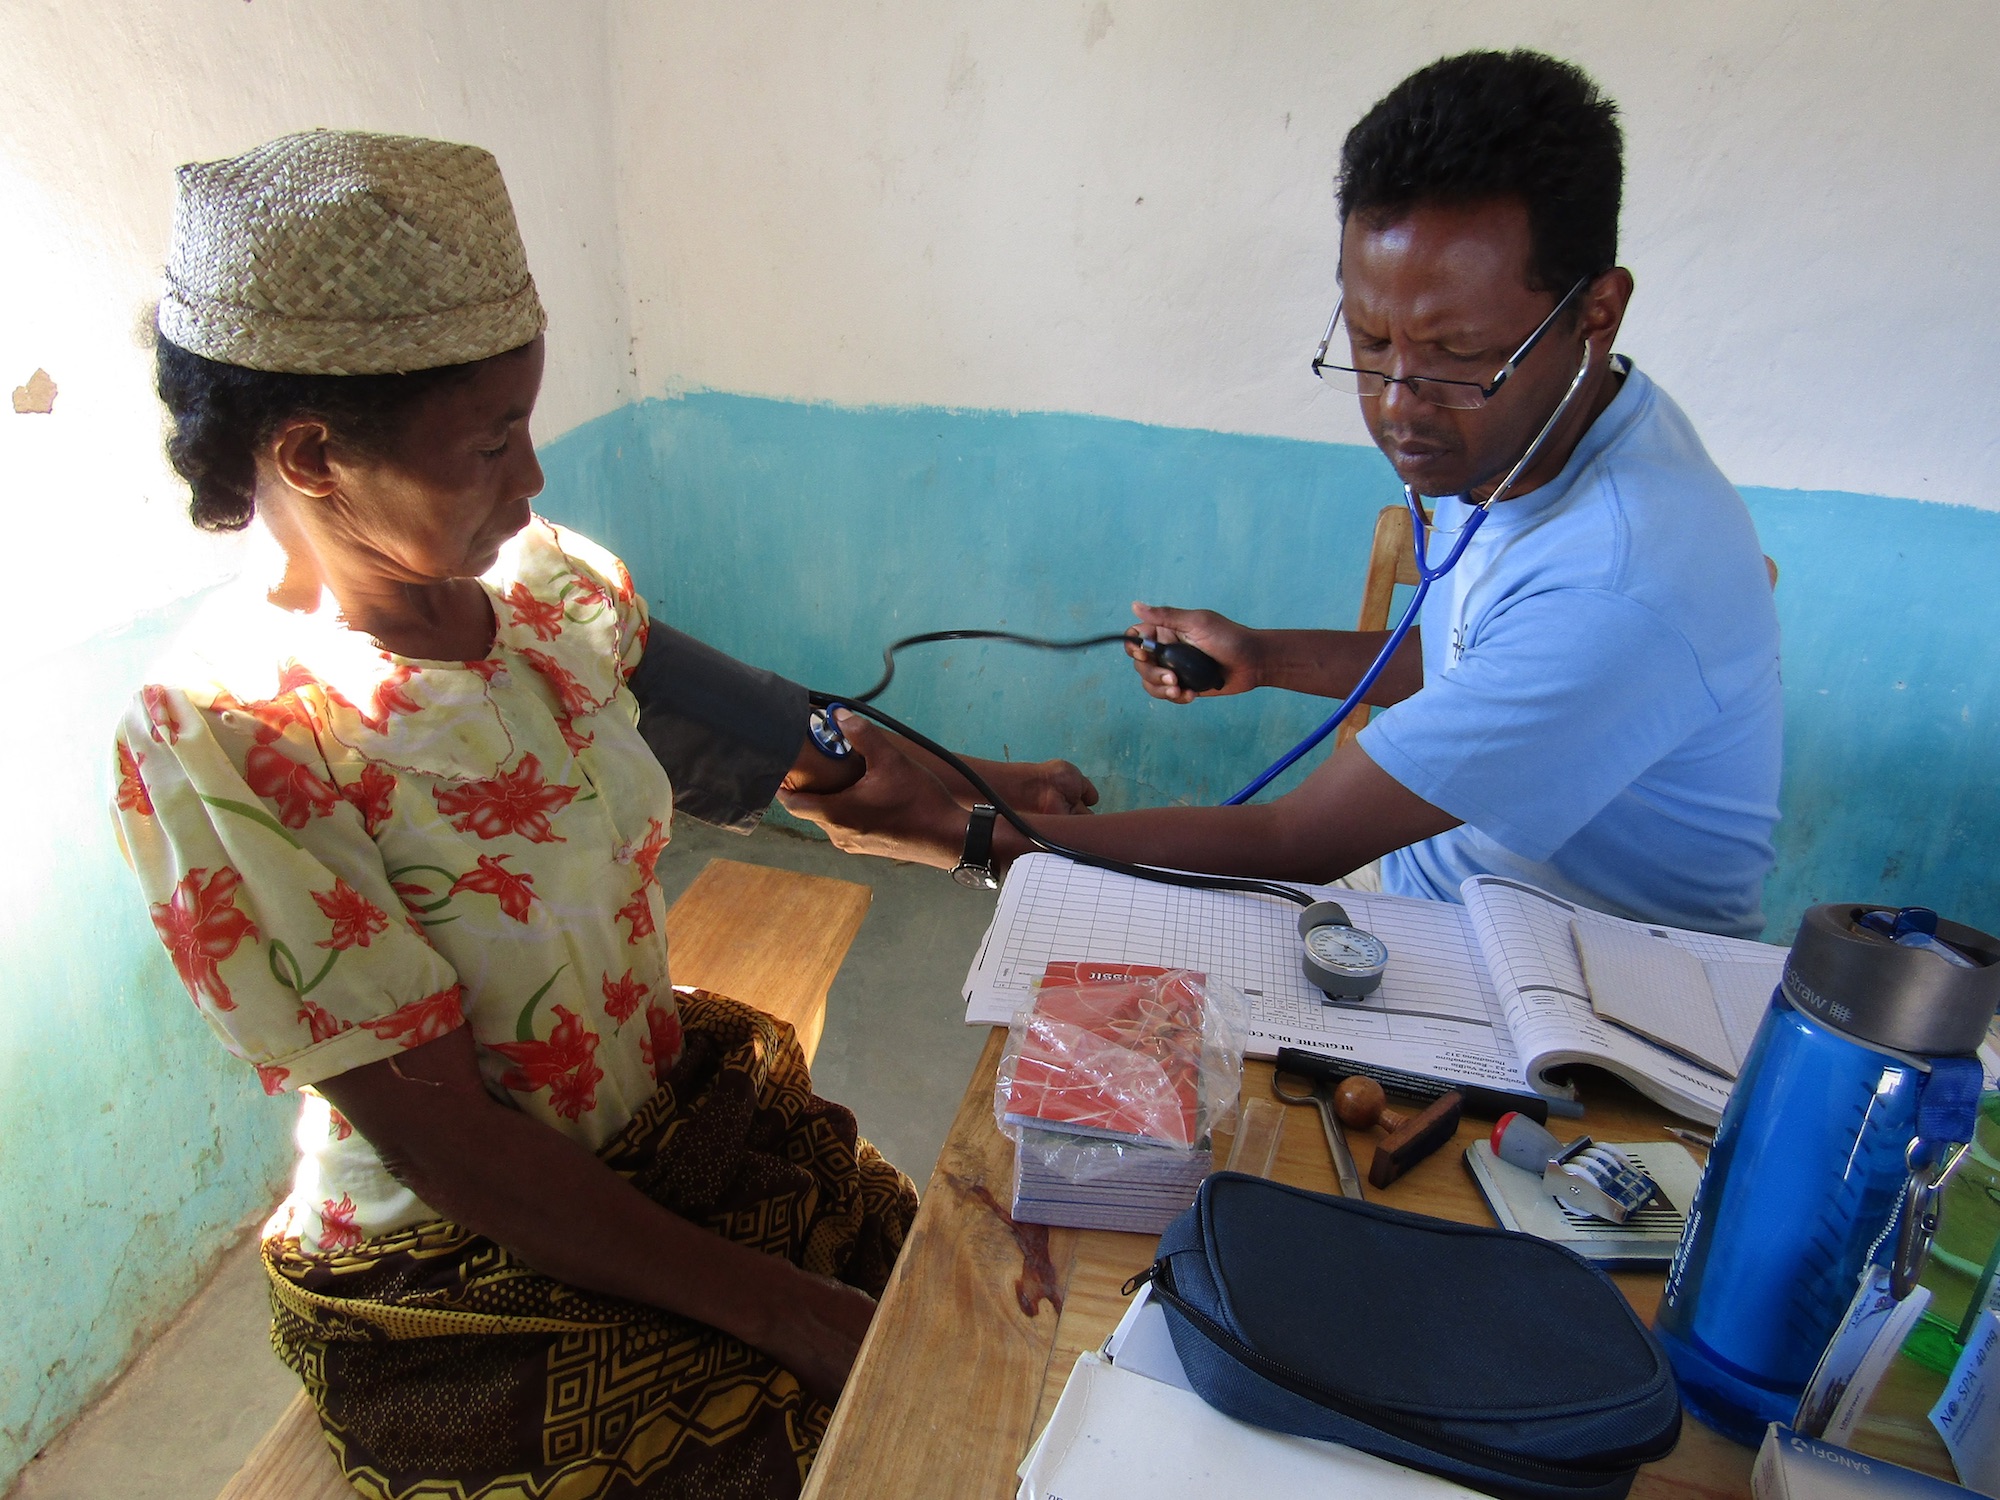 Verso cure accessibili per tutti nell’Africa sub-sahariana